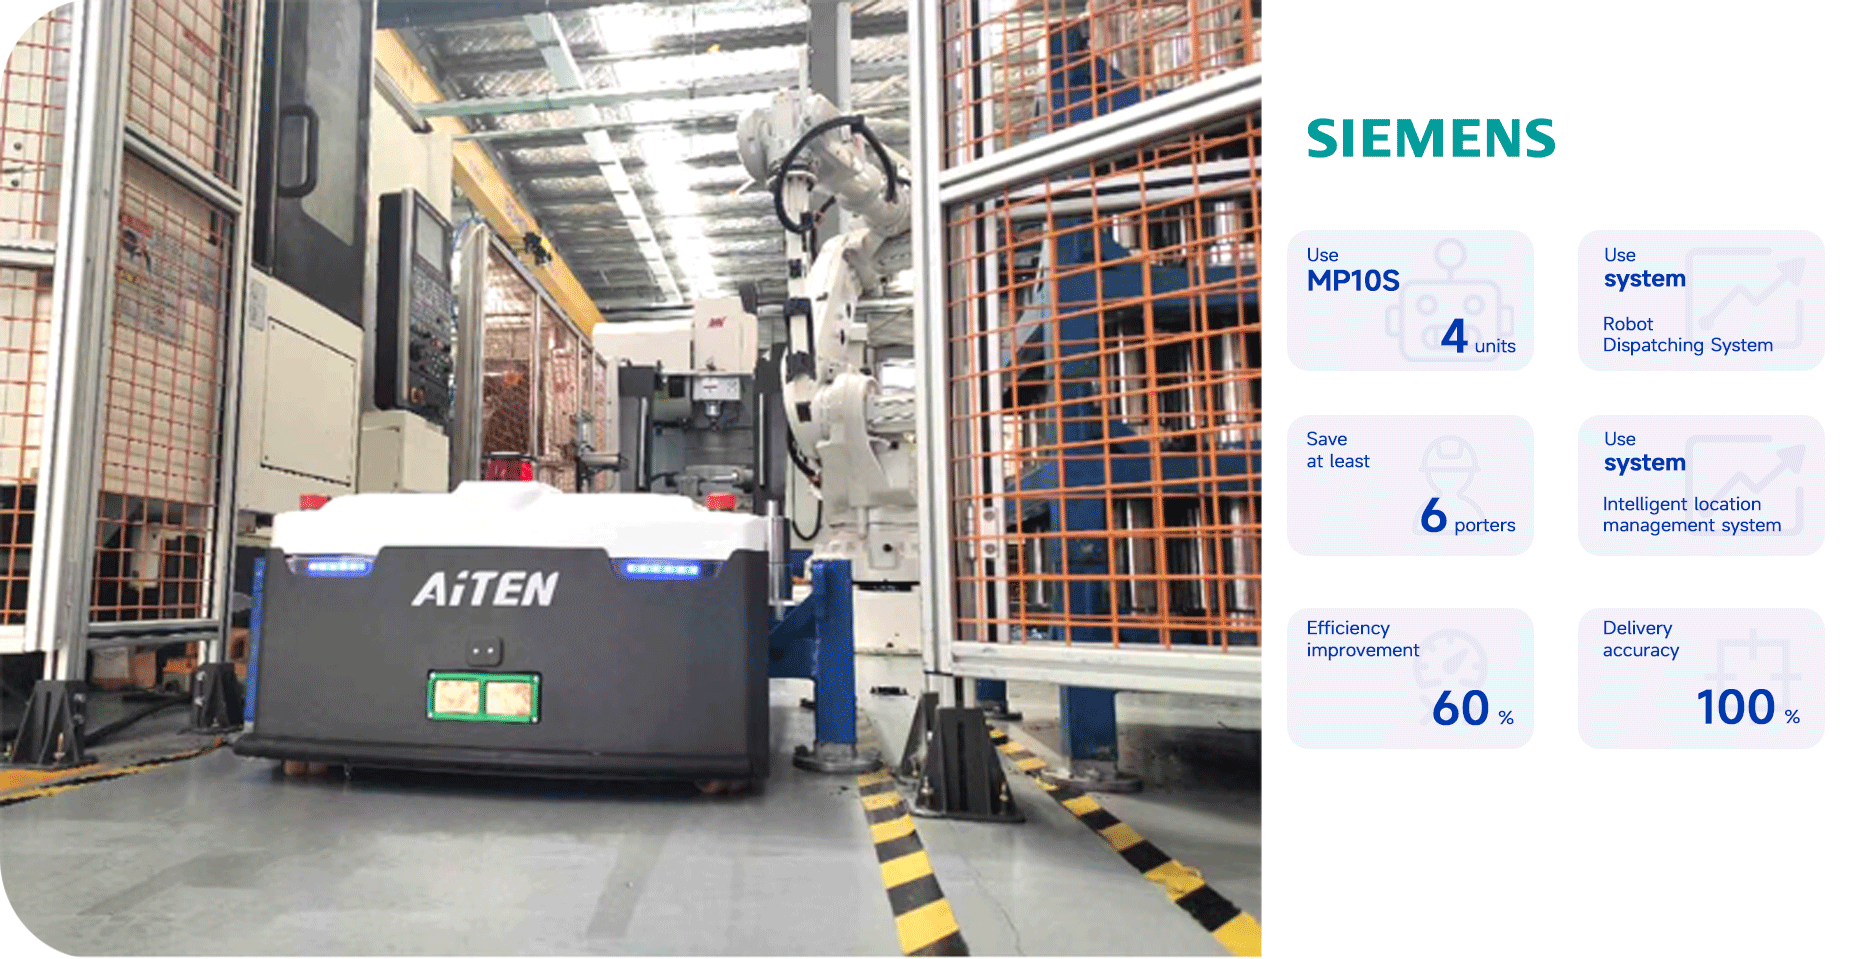 AiTEN autonomous mobile robot Case2 - Siemens